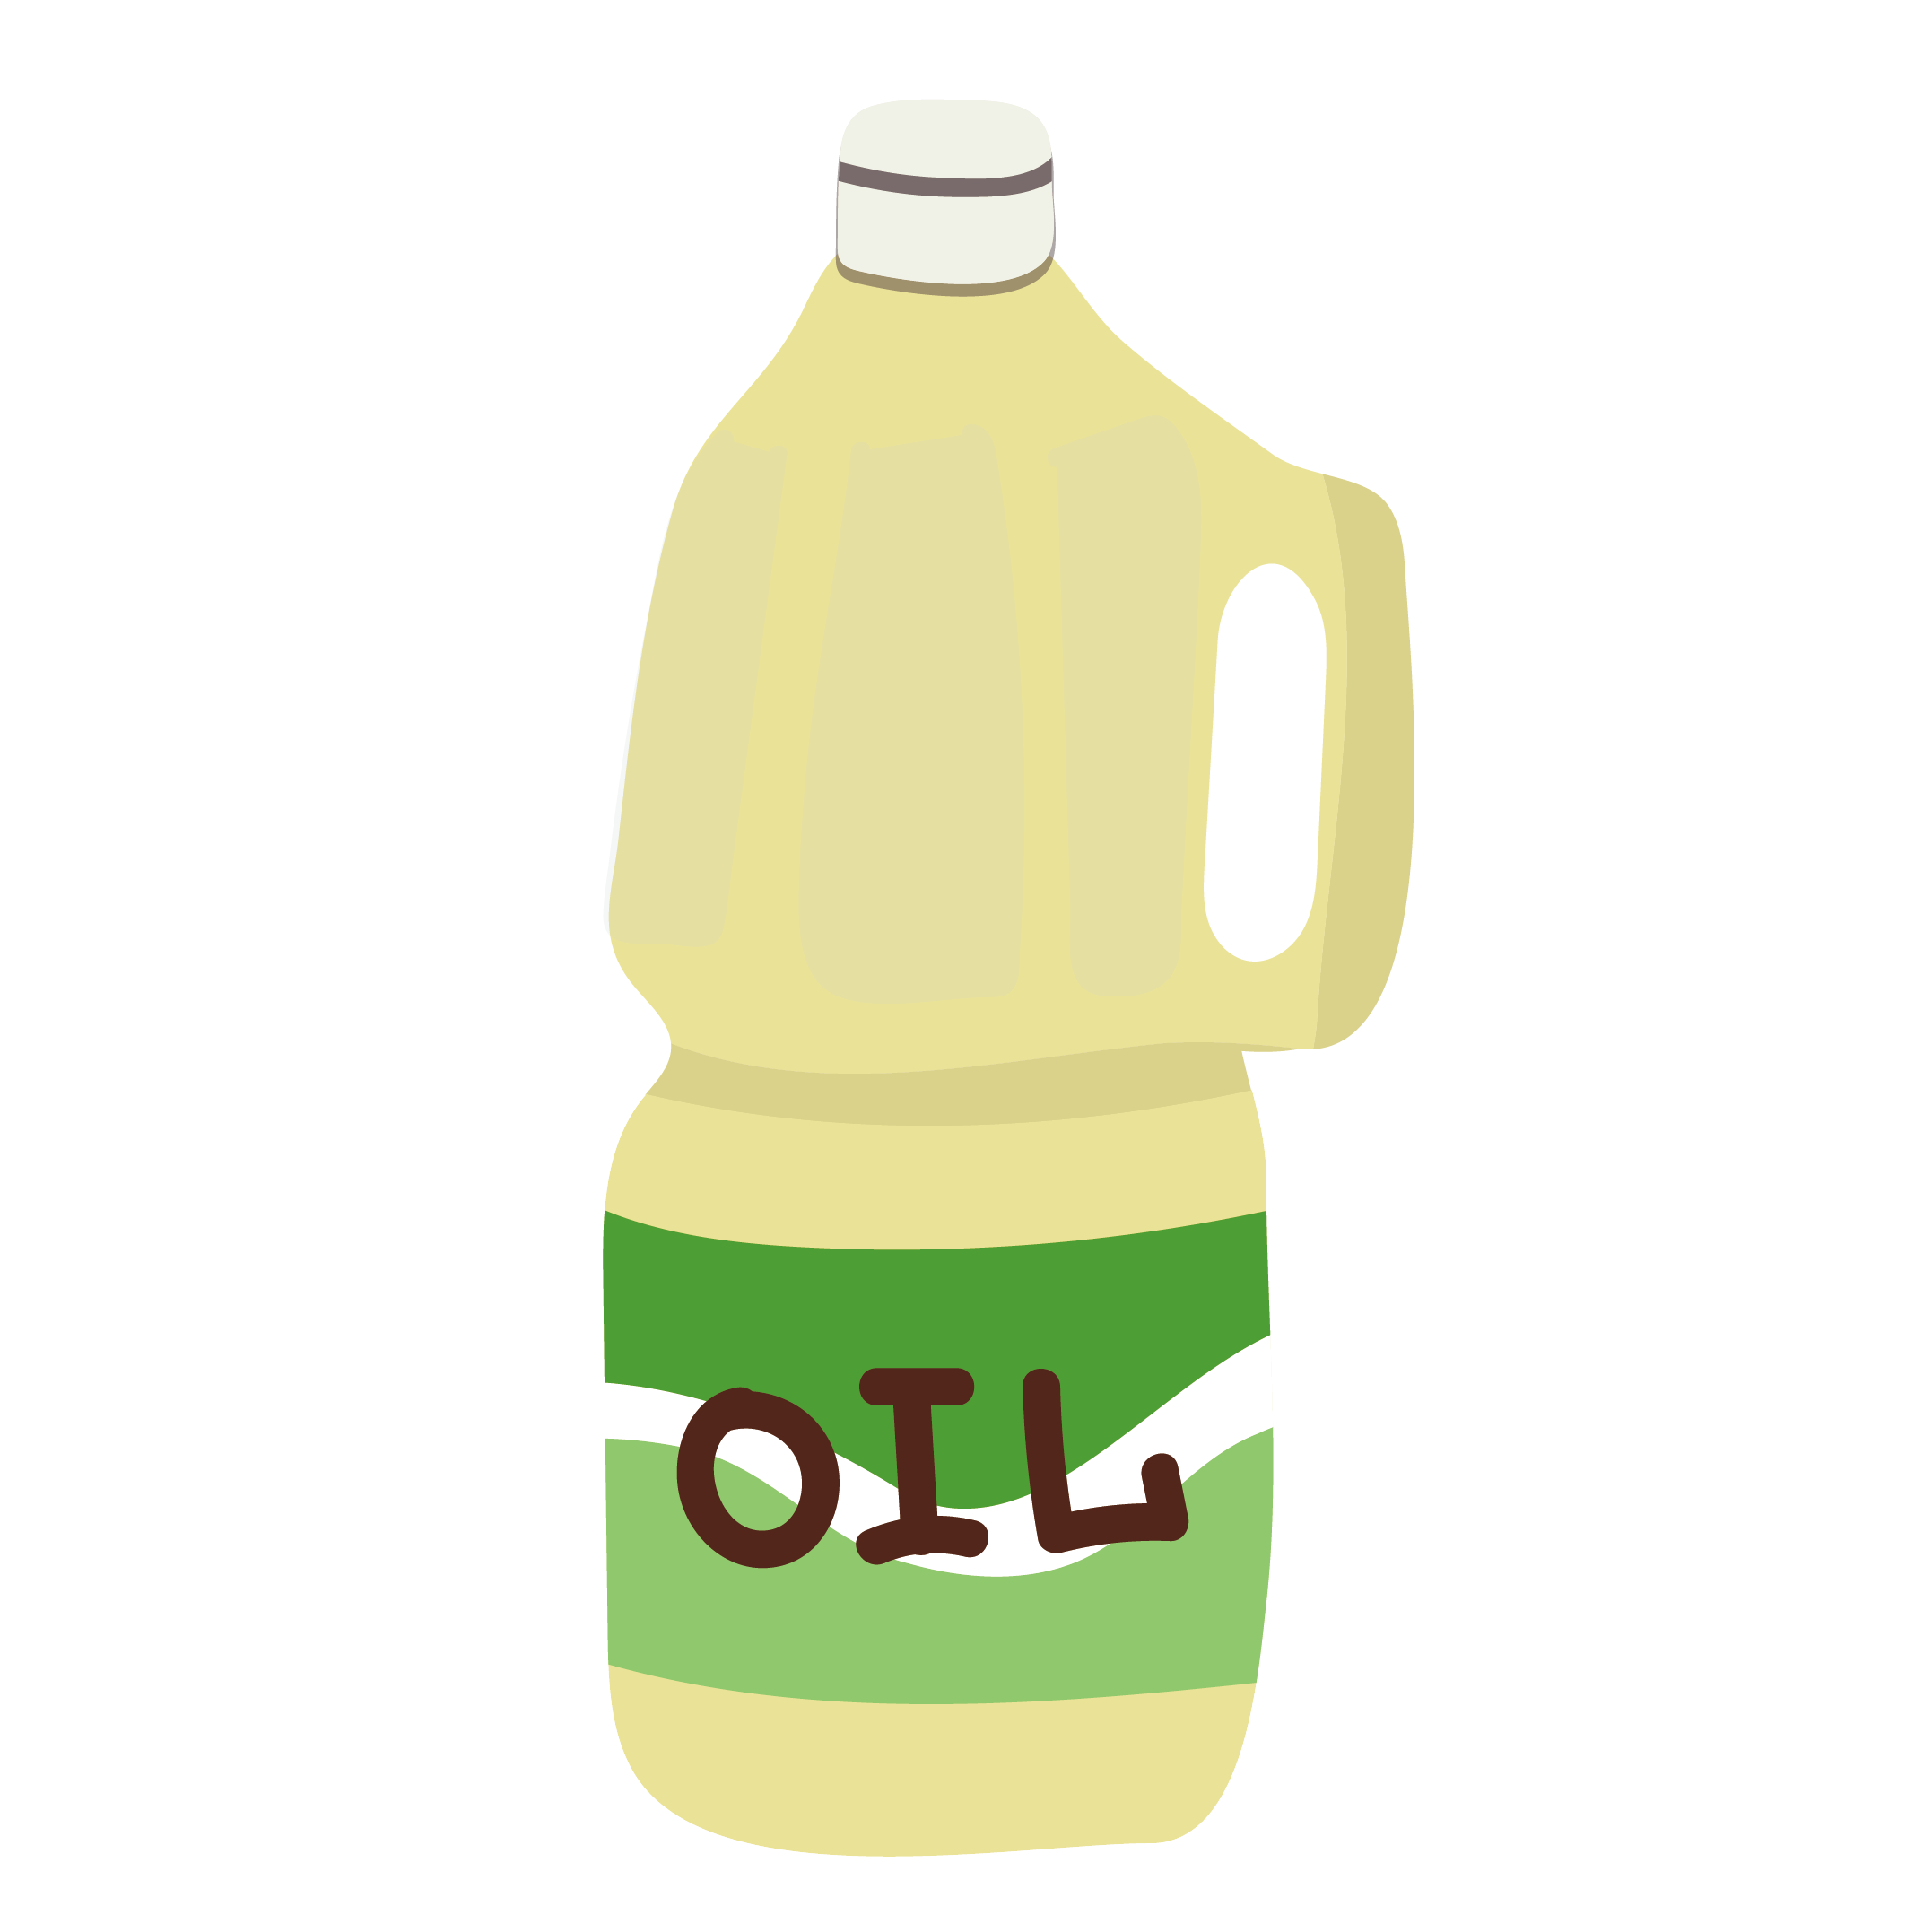 油 あぶら サラダ油 食用油 のイラスト レシピなどに 商用フリー 無料 のイラスト素材なら イラストマンション